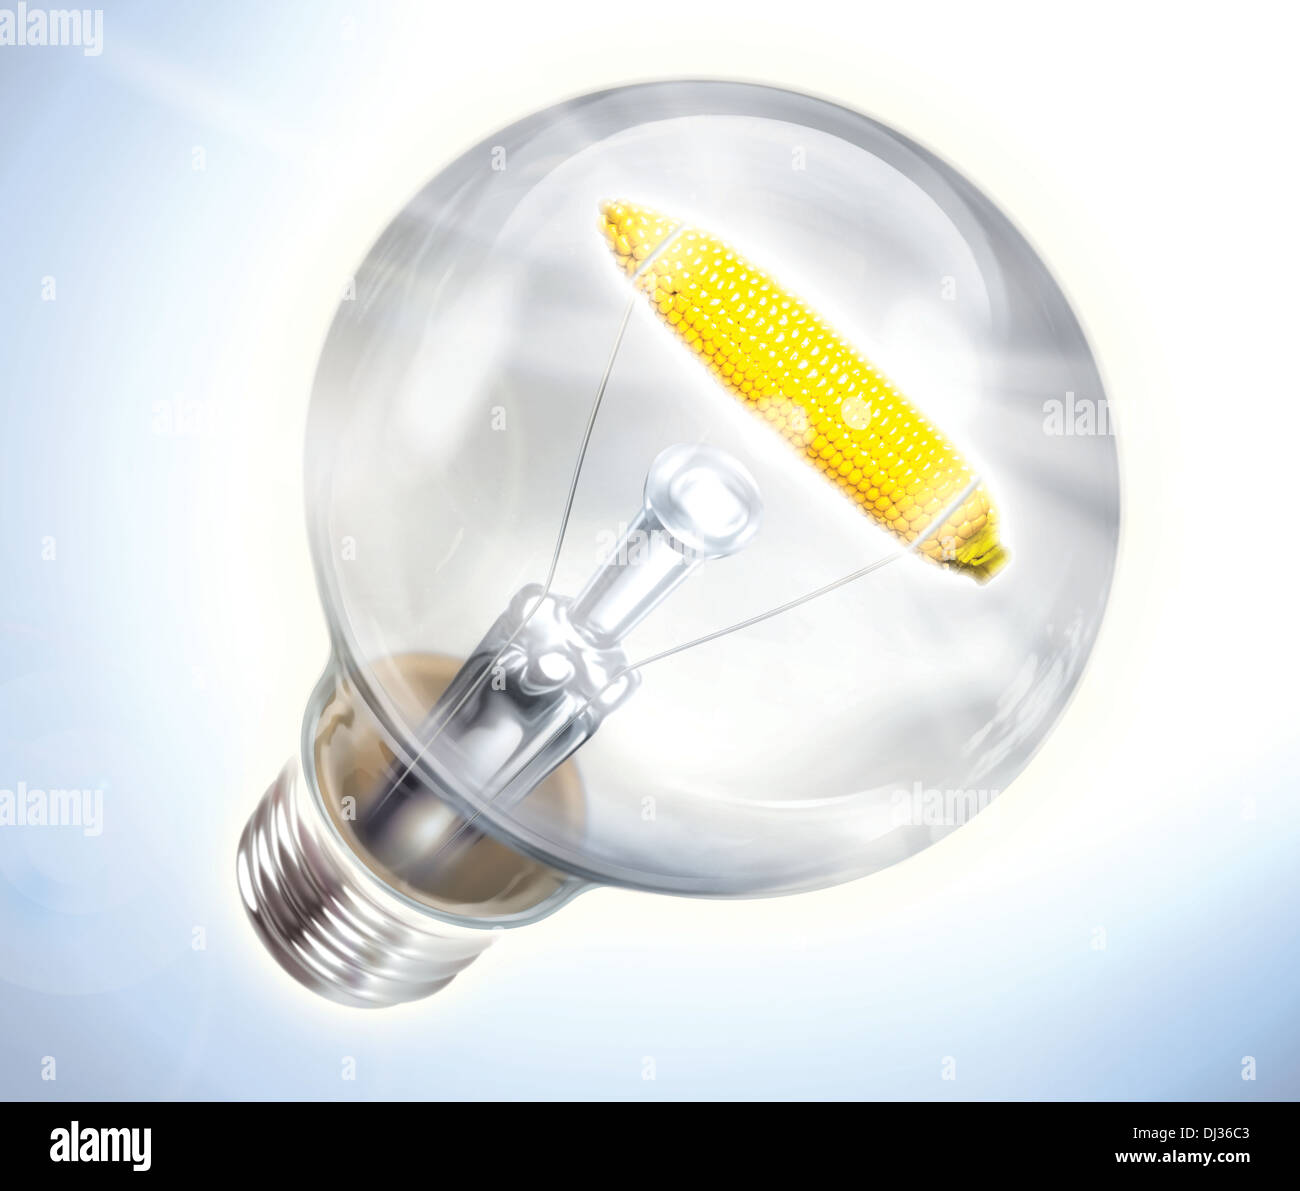 Anschauliches Bild der Glühbirne mit Maiskolben, Bioenergie darstellt Stockfoto